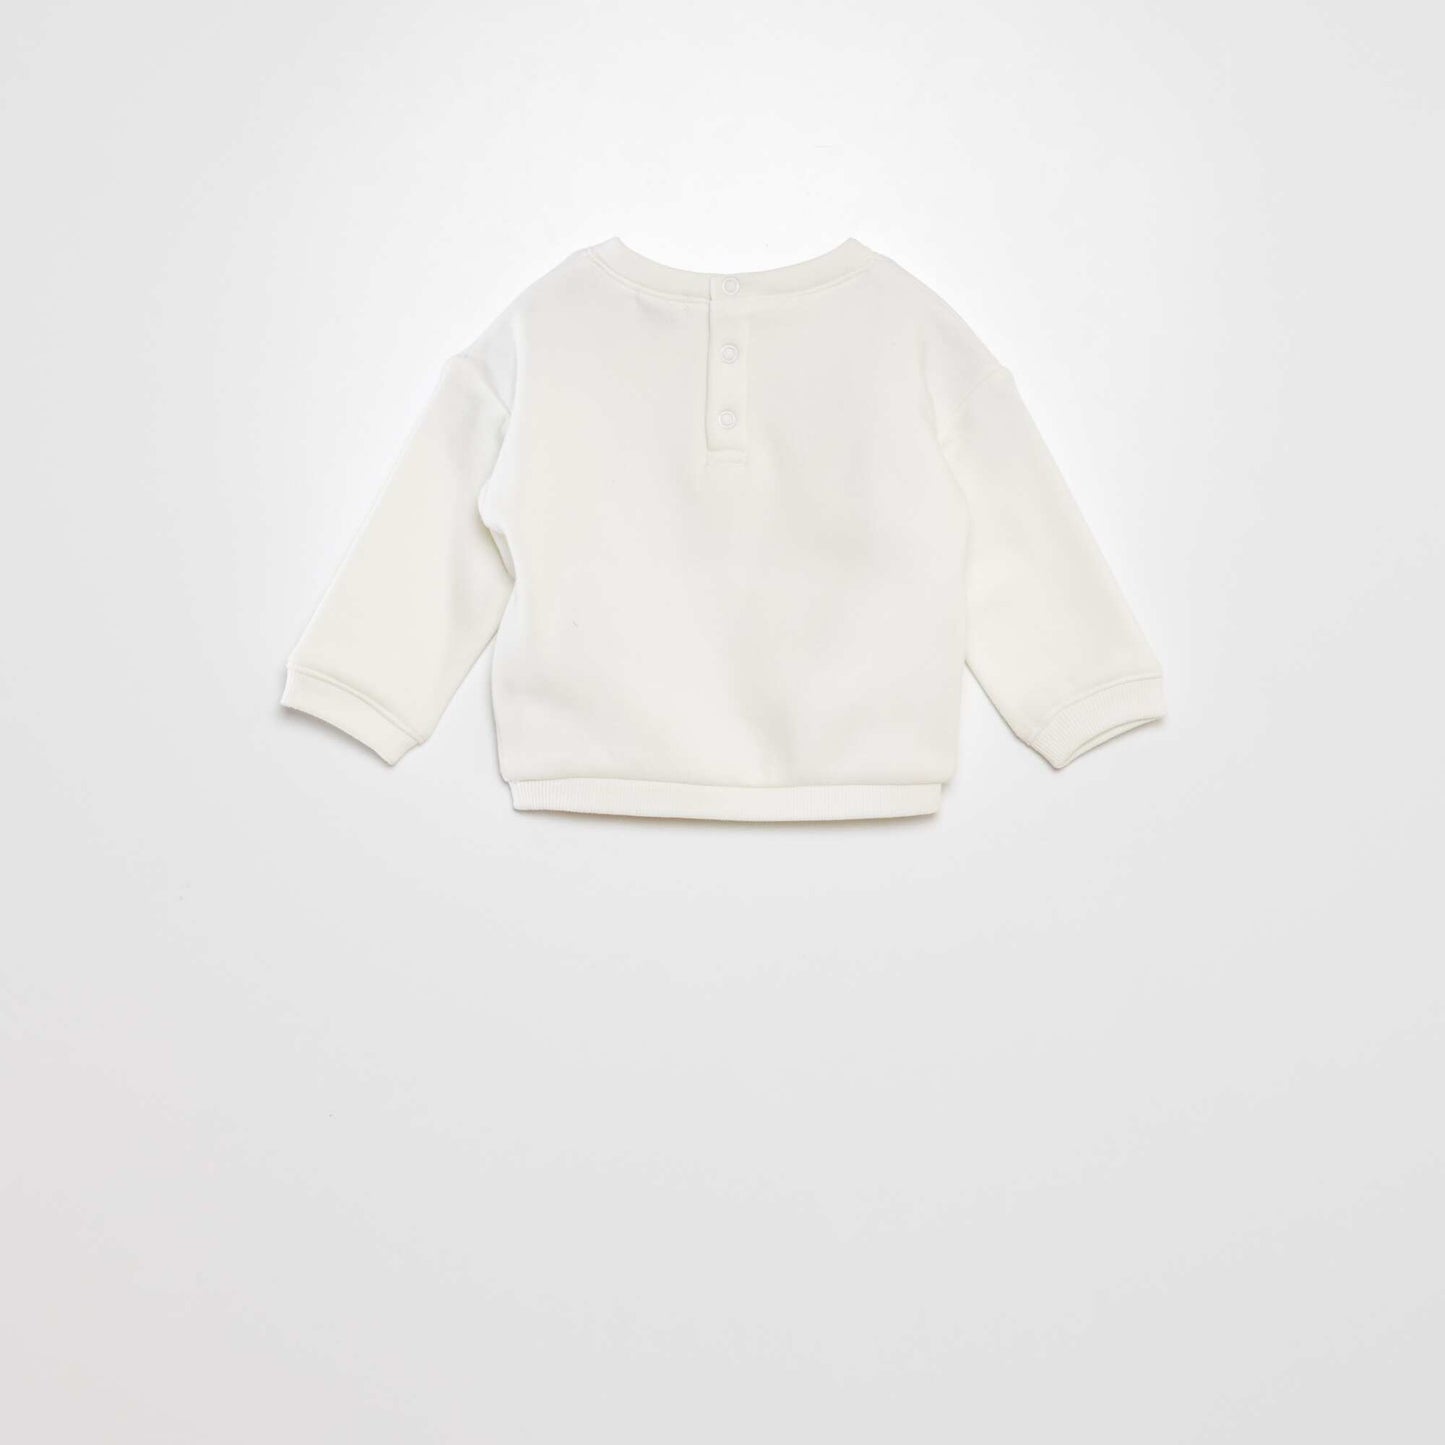 Printed sweatshirt fabric sweater WHITE